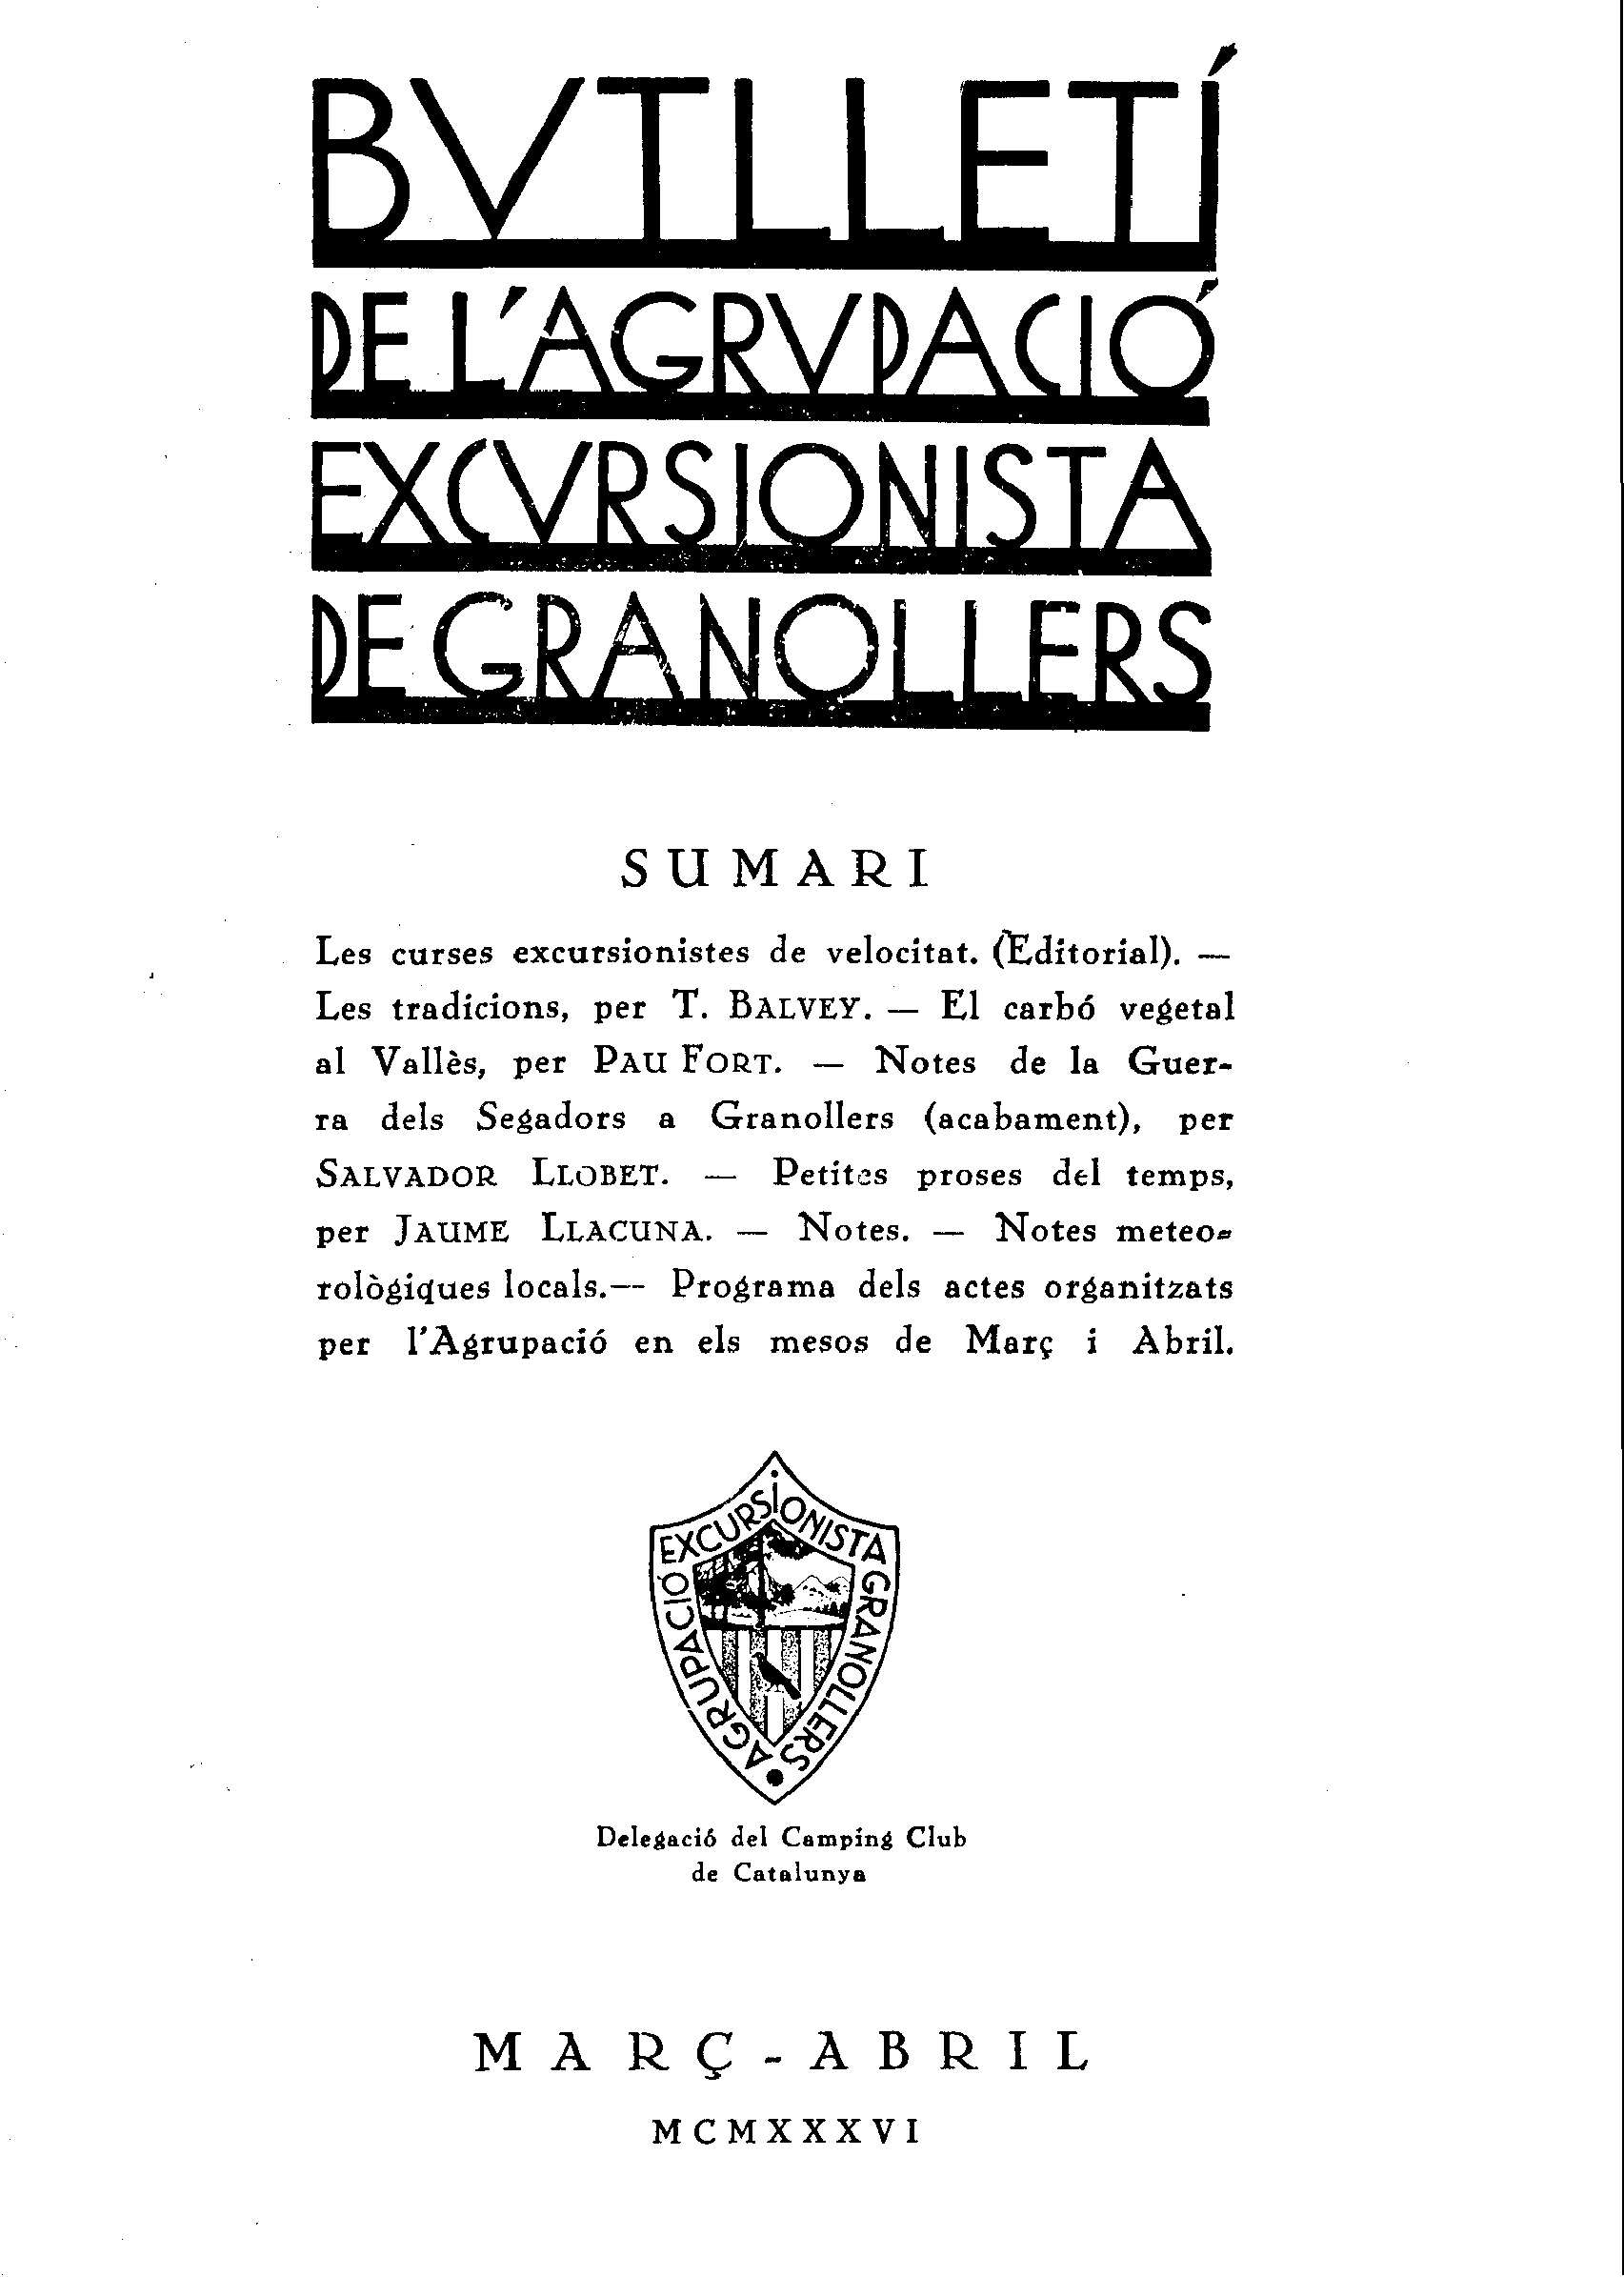 Butlletí de l'Agrupació Excursionista de Granollers, 1/3/1936 [Exemplar]